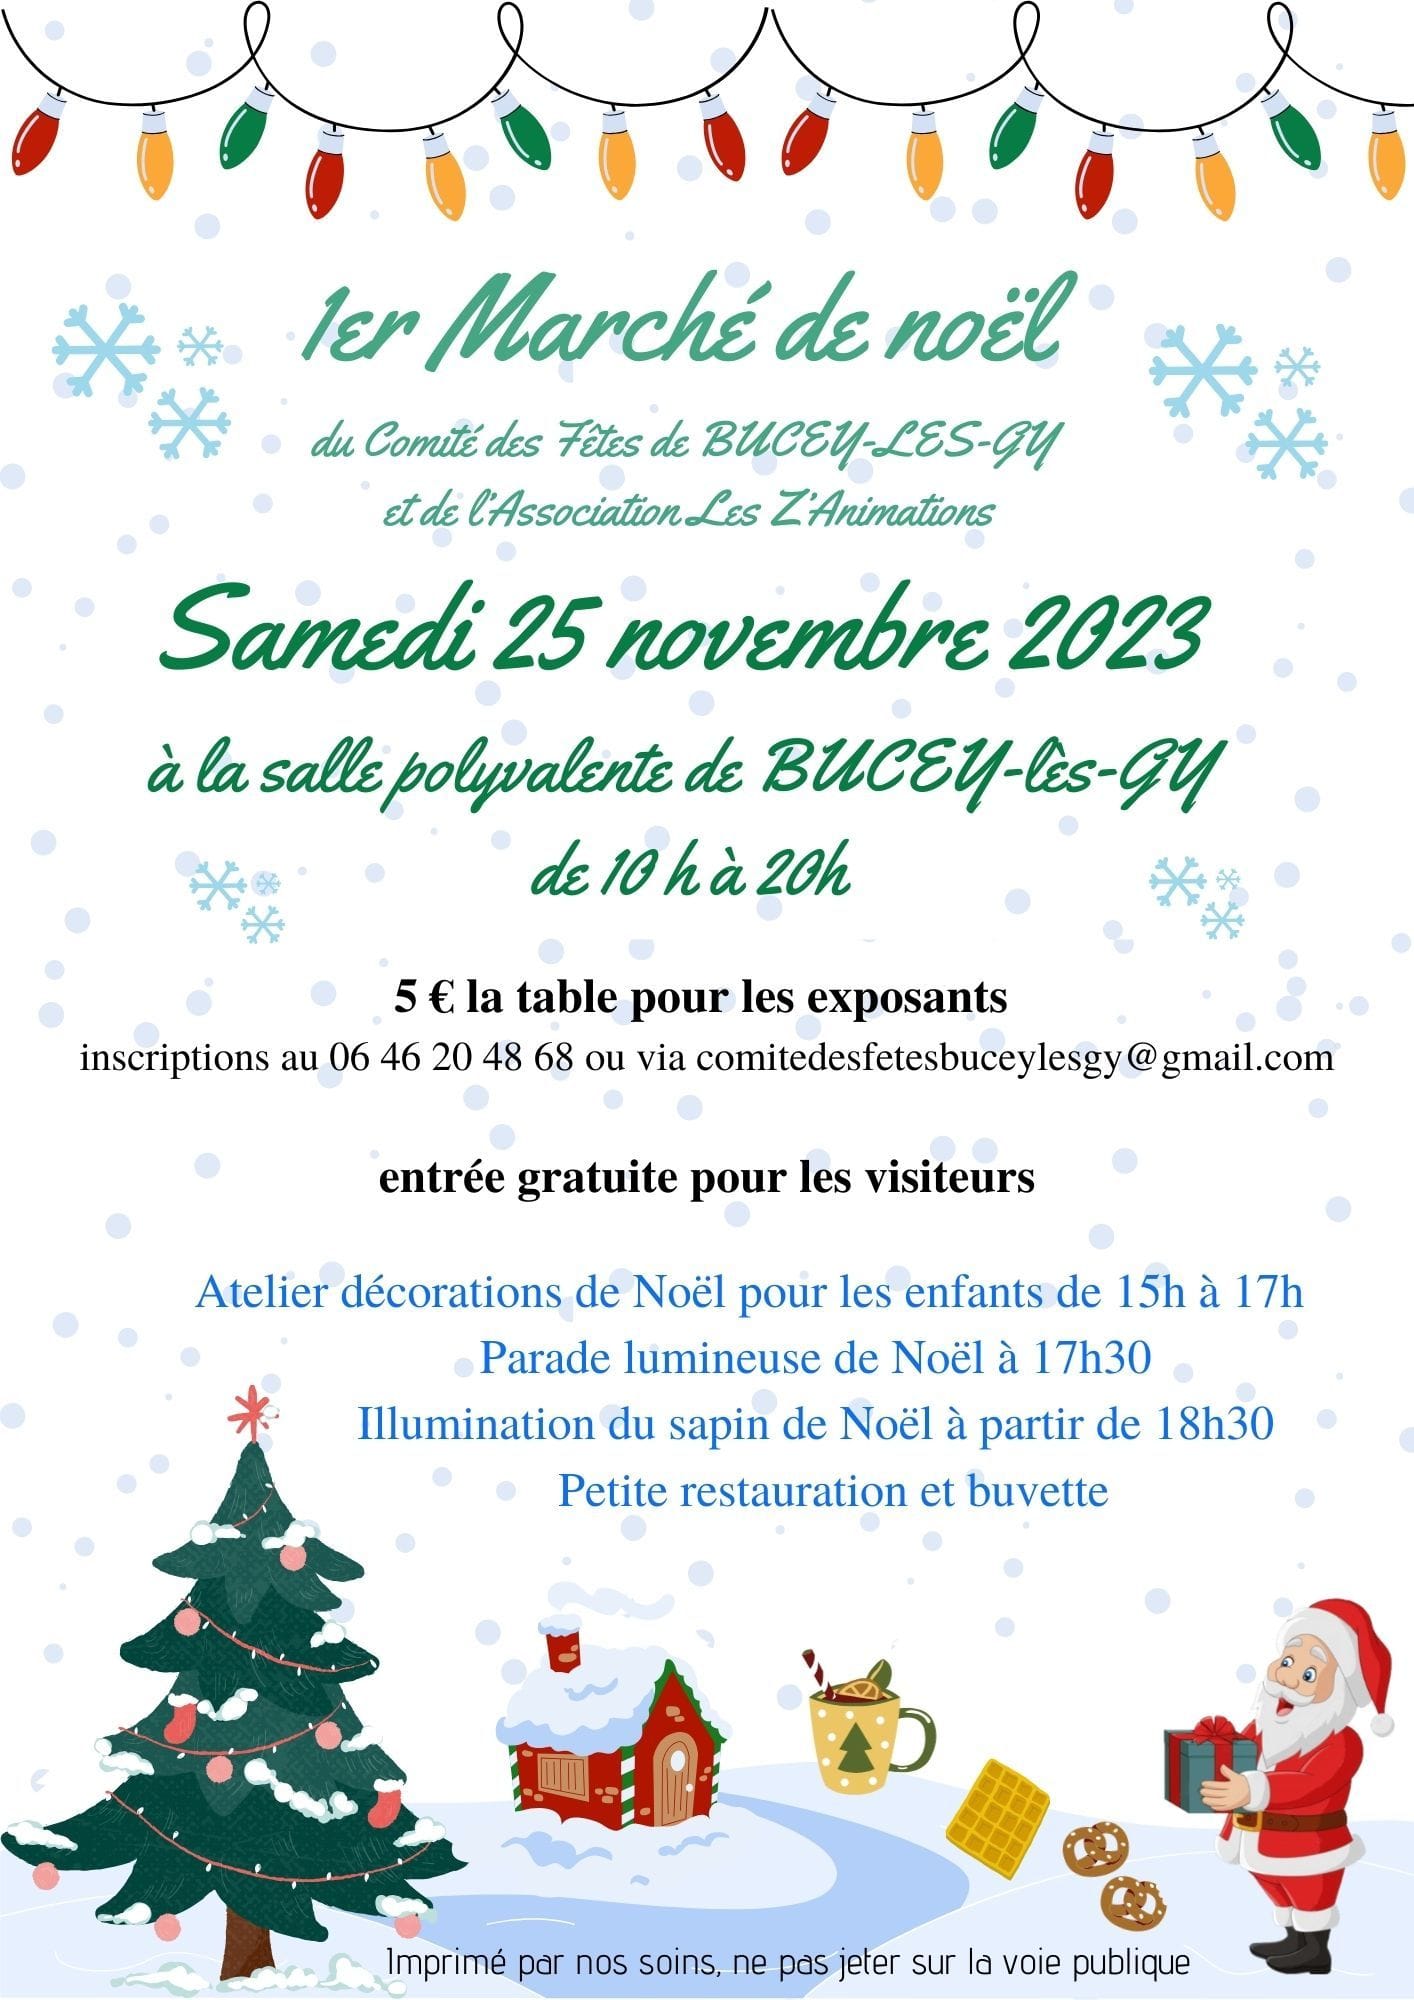 1er Marché de Noël du Comité des Fêtes de Bucey-lès-Gy et de l'association Les Z'animations